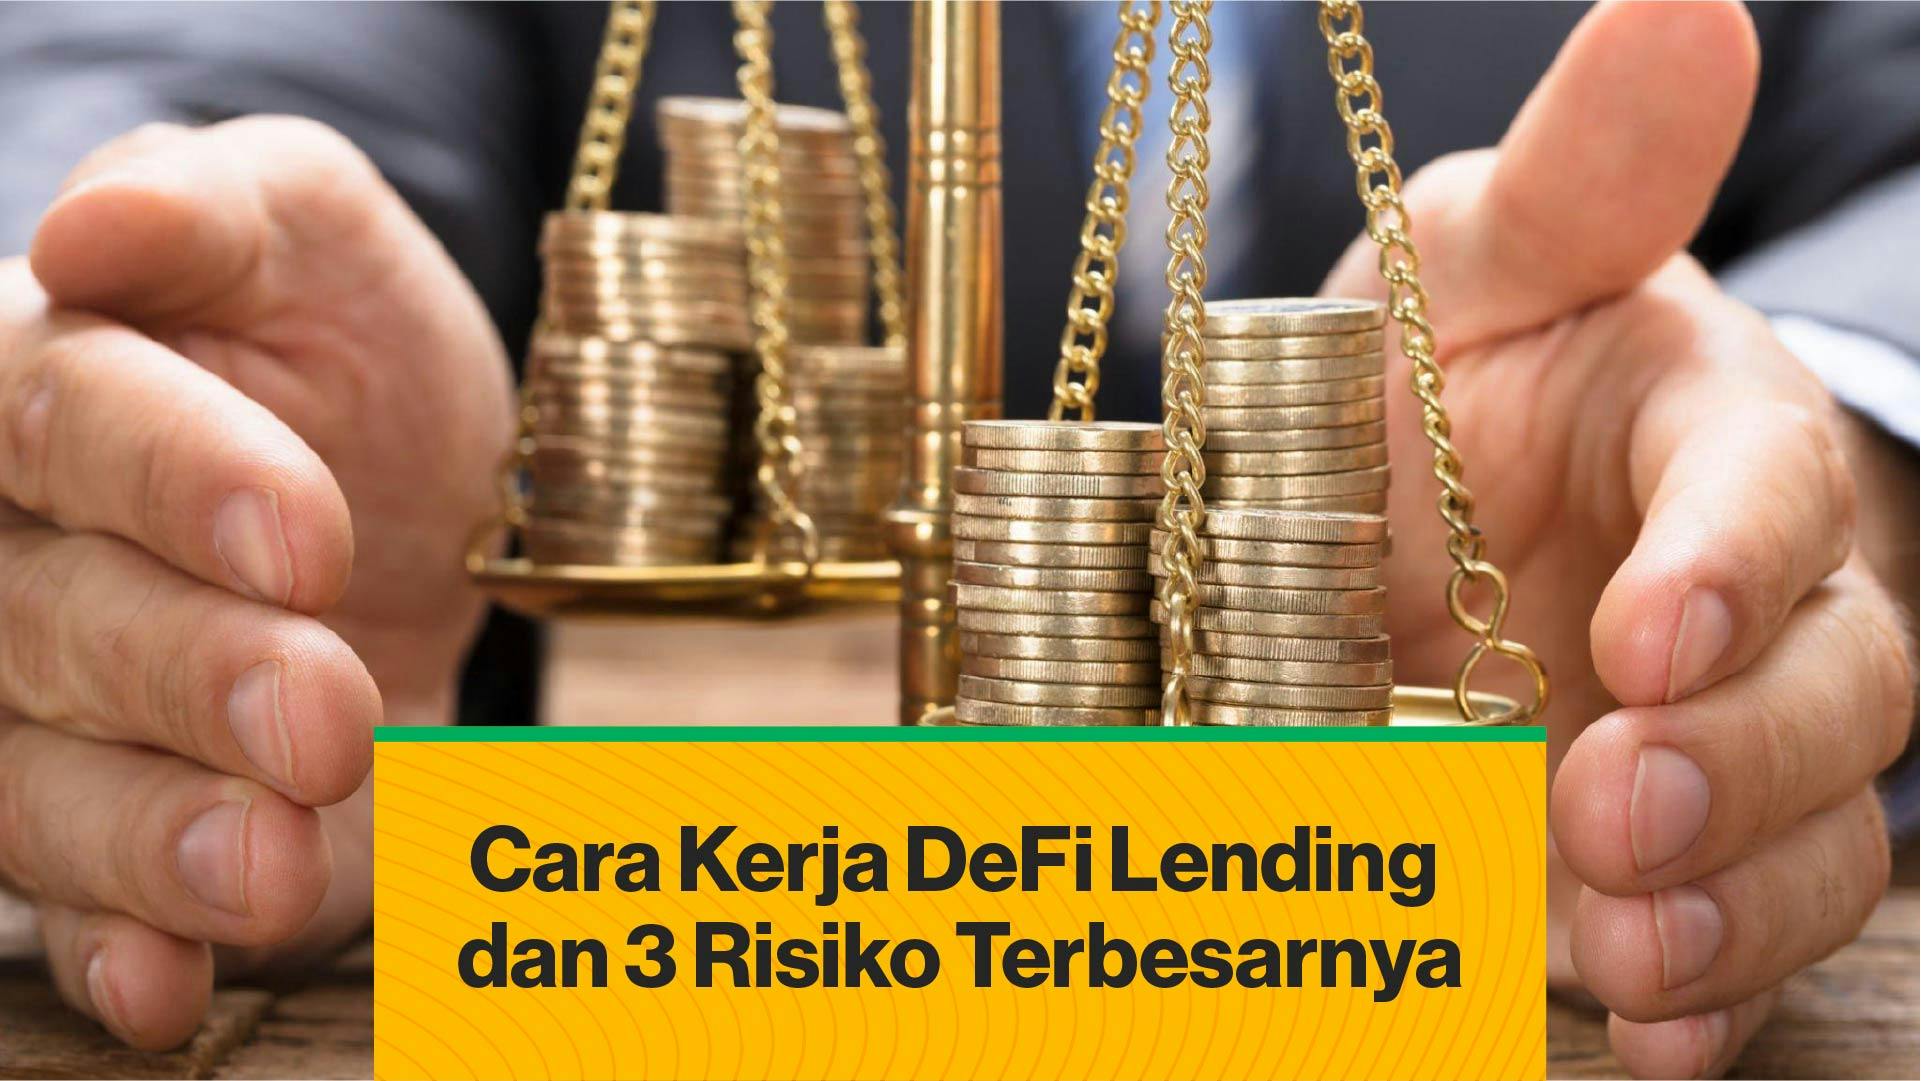 3 Risiko Terbesar DeFi Lending (Coindesk Indonesia)